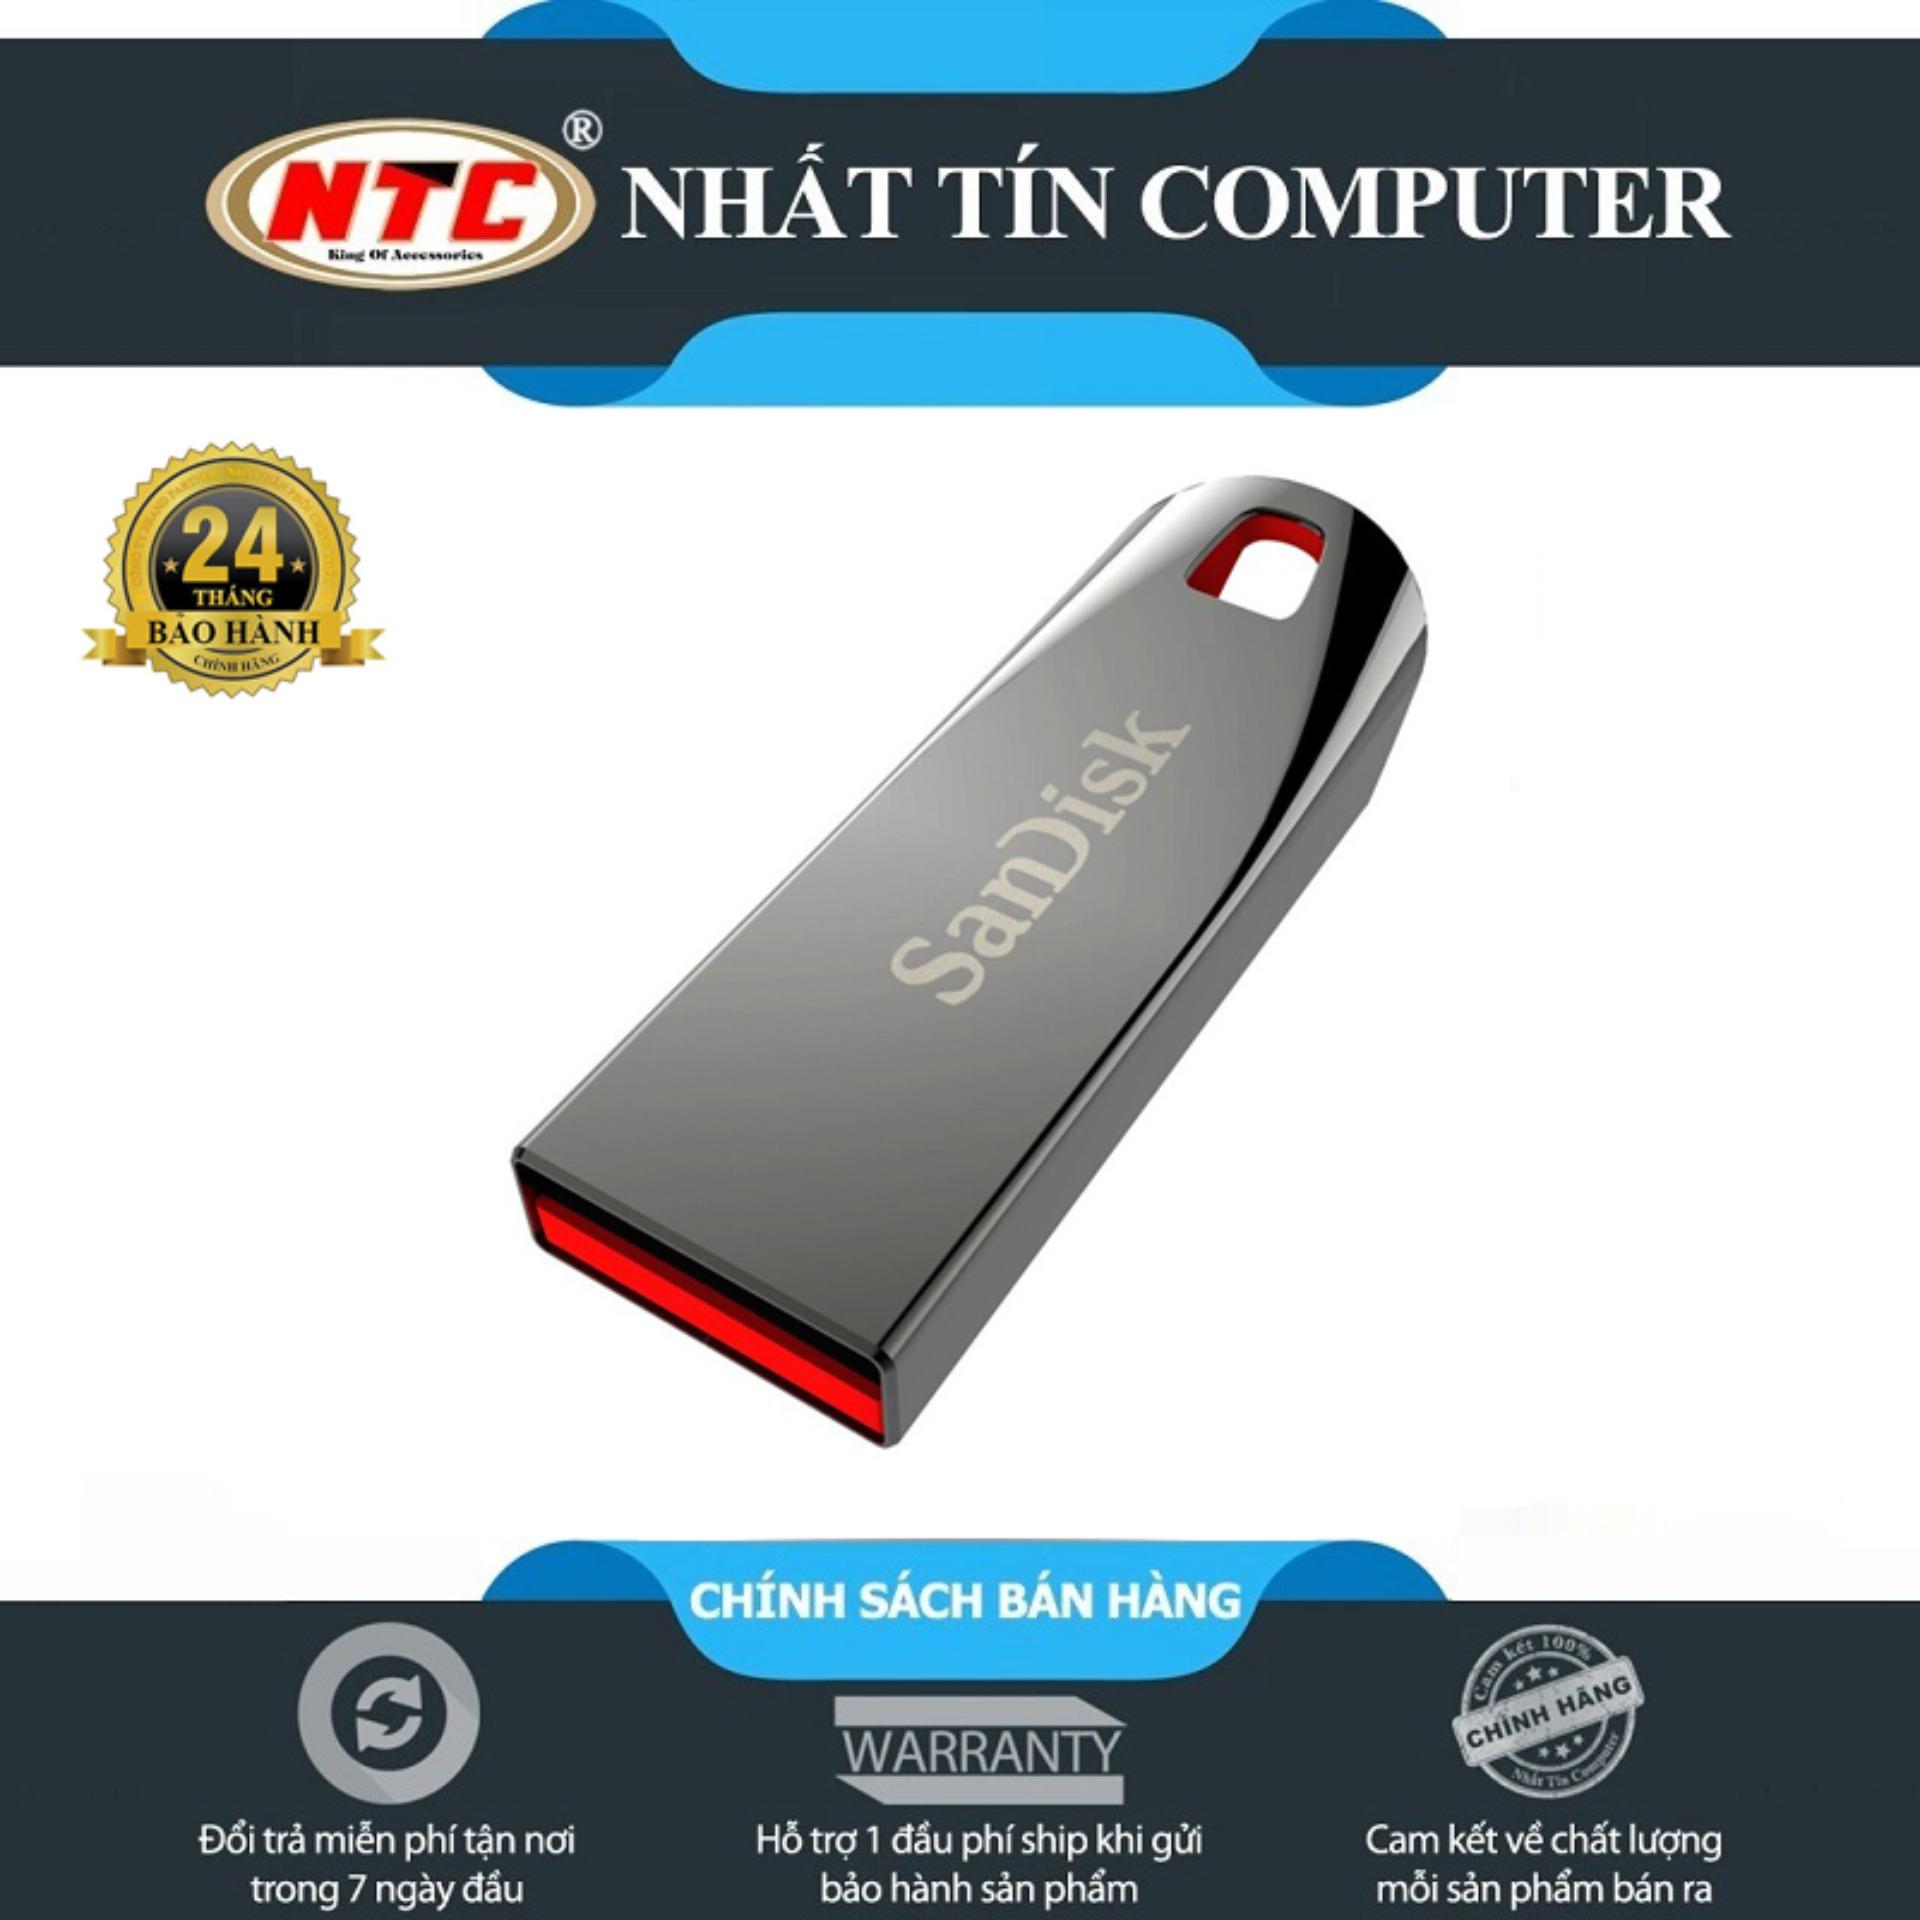 USB 2.0 Sandisk CZ71 32GB Cruzer Force - hợp kim nguyên khối (Bạc) - Nhất Tín Computer